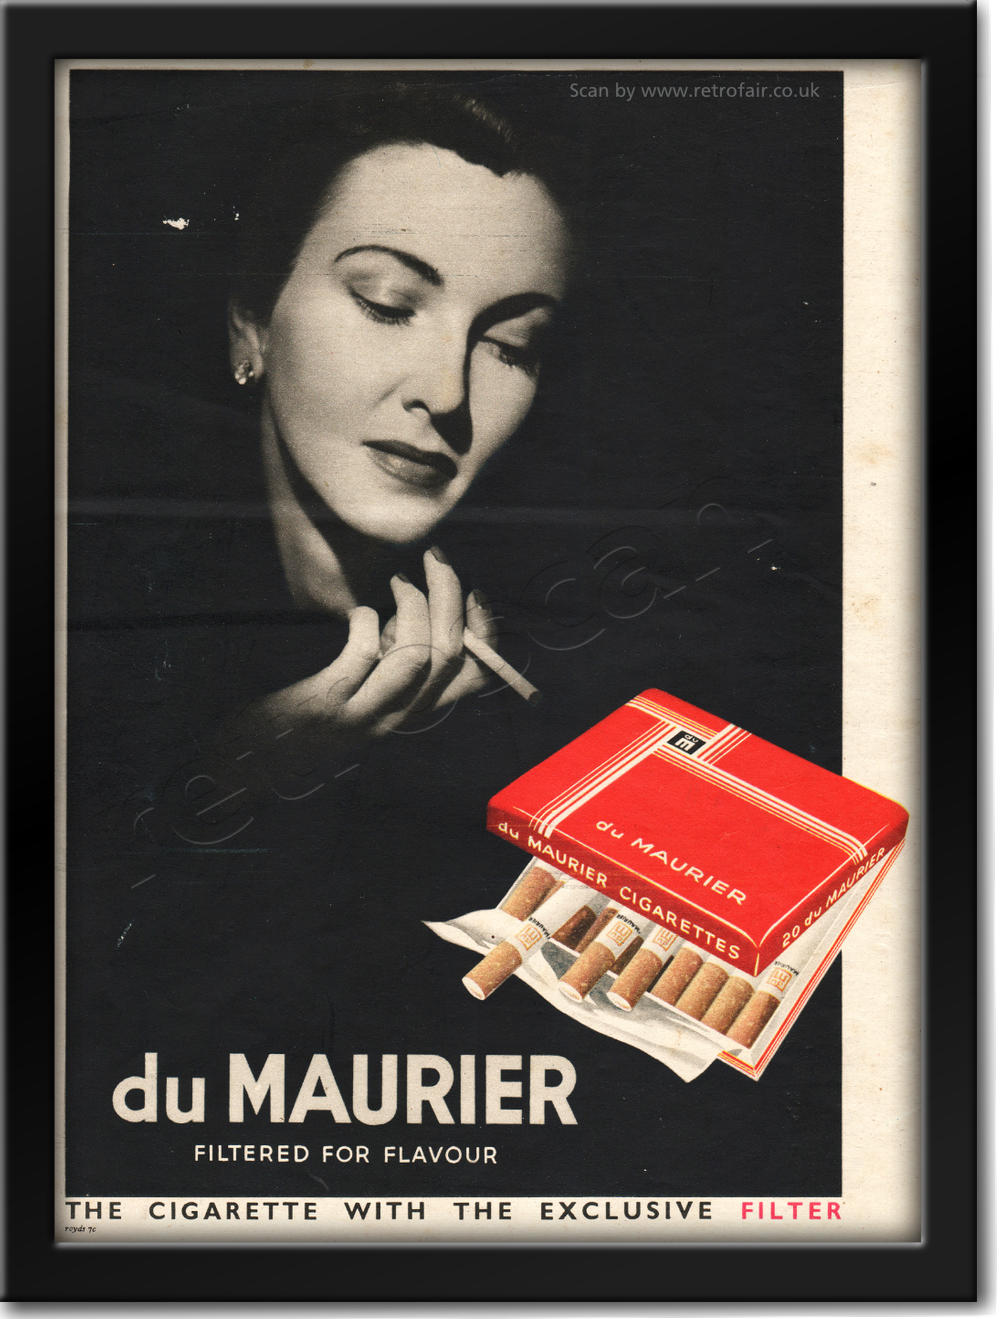 1950 retro Du Maurier Cigarettes advert